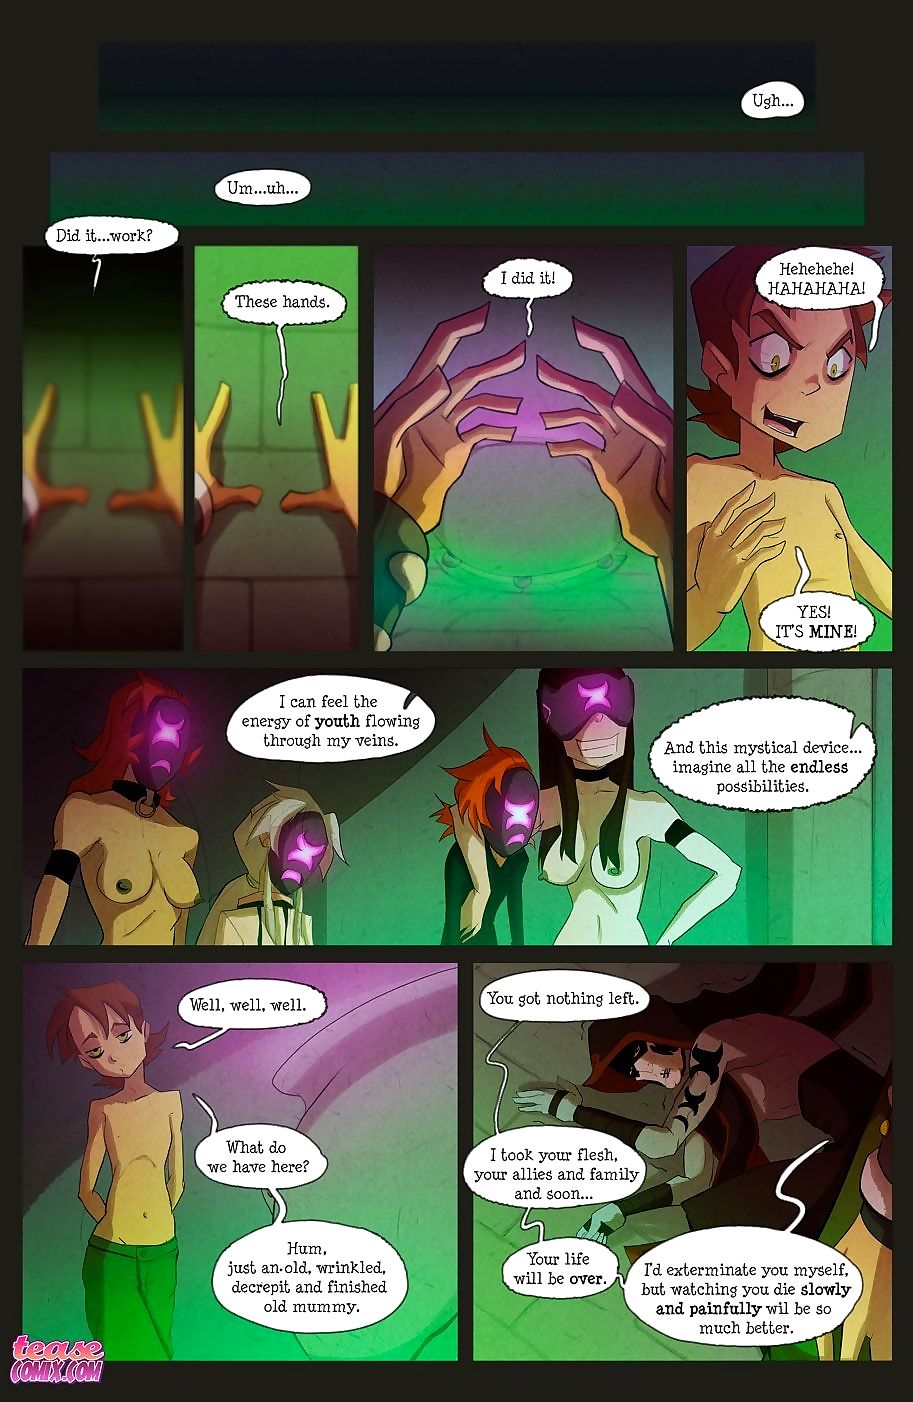 el bruja Con no nombre - Parte 4 page 1